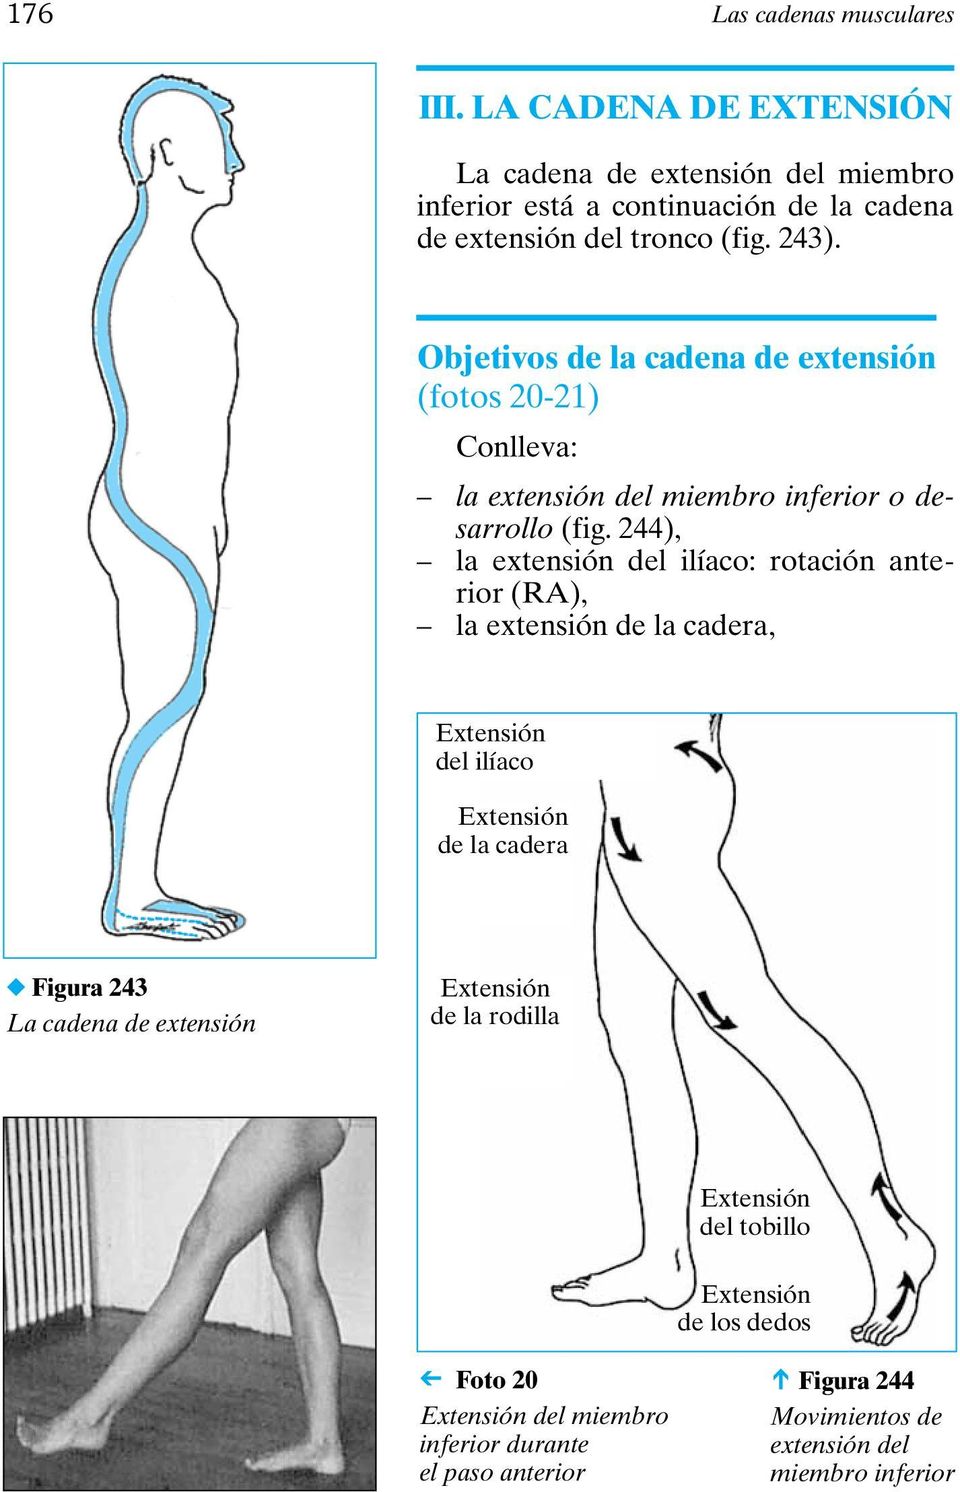 244), la extensión del ilíaco: rotación anterior (RA), la extensión de la cadera, Extensión del ilíaco Extensión de la cadera Figura 243 La cadena de